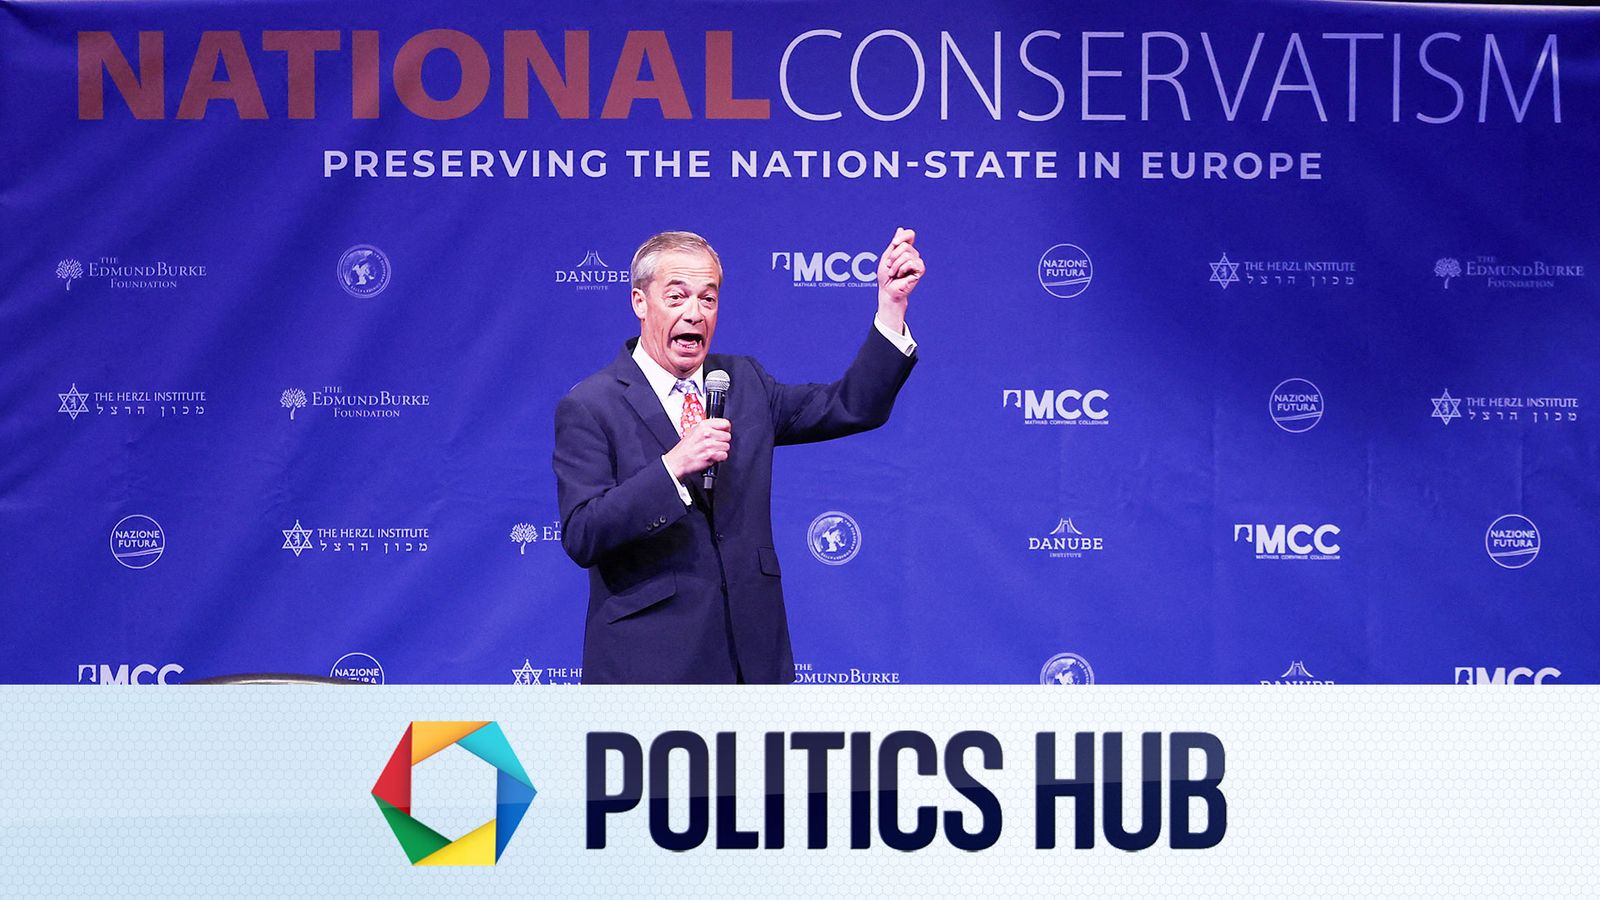 Dernières nouvelles politiques : « Je ne vais pas m'impliquer dans une bagarre » – Nigel Farage s'exprime après avoir quitté la conférence après l'arrivée de la police |  Actualités politiques